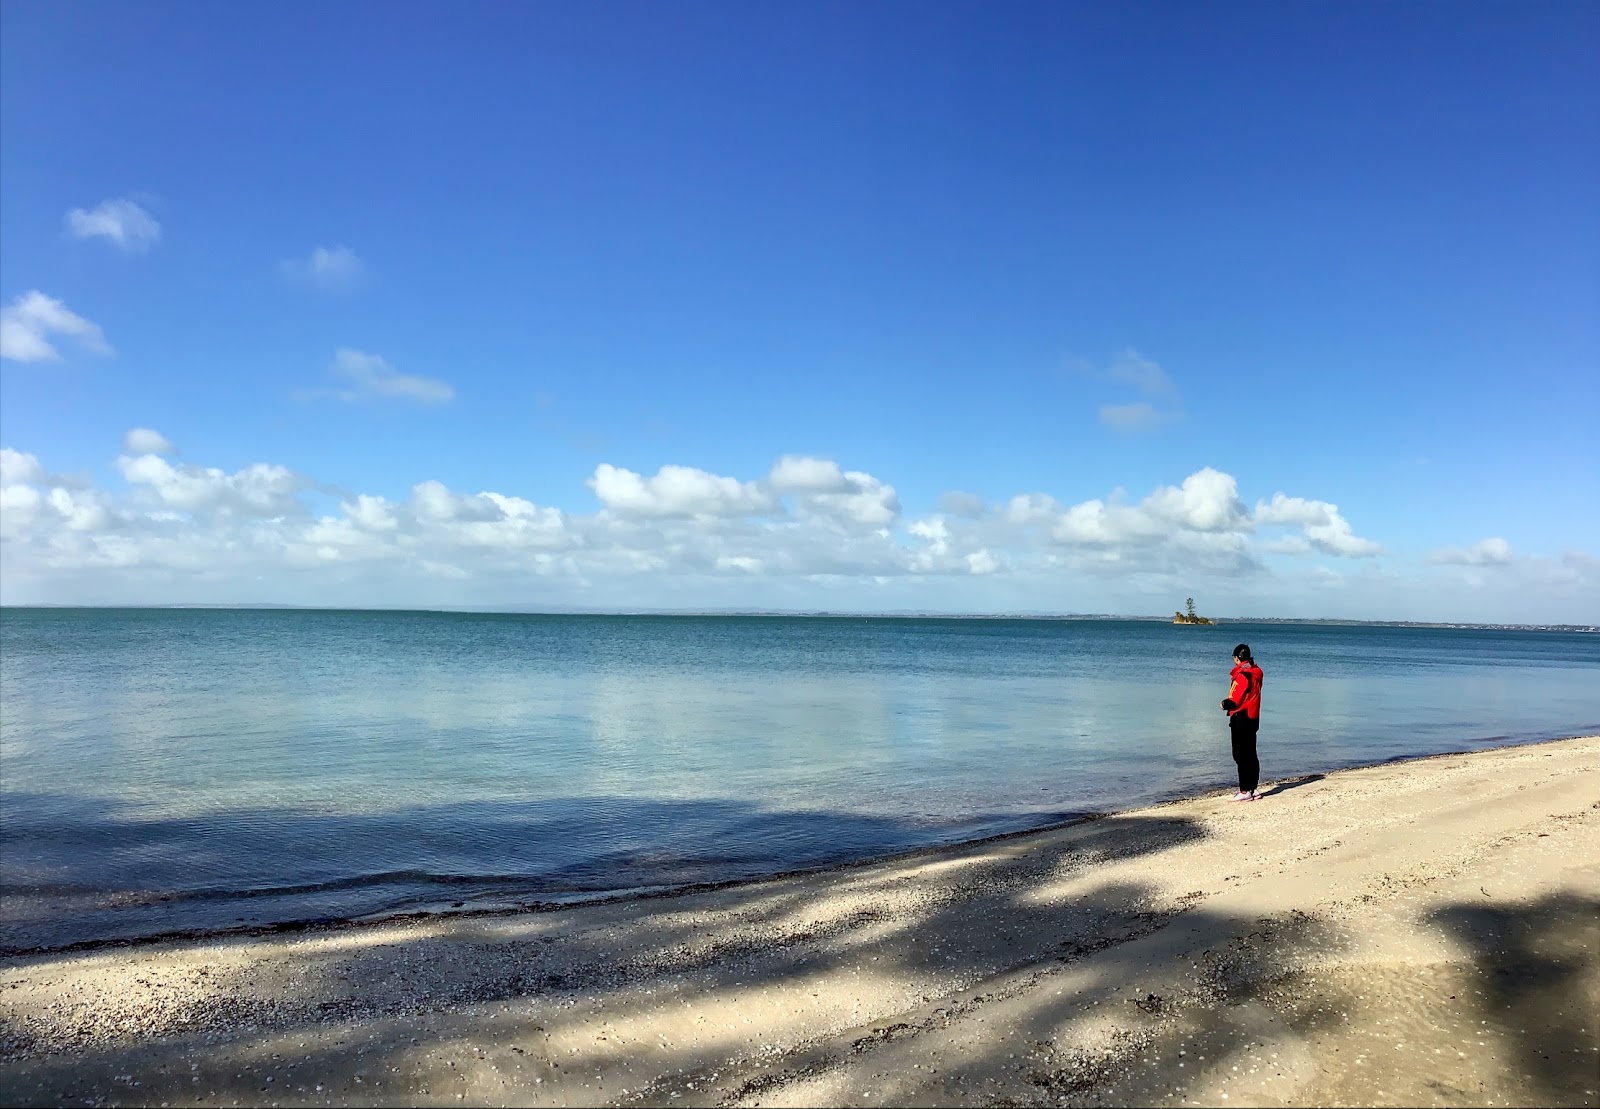 Matakawau Beach'in fotoğrafı geniş plaj ile birlikte